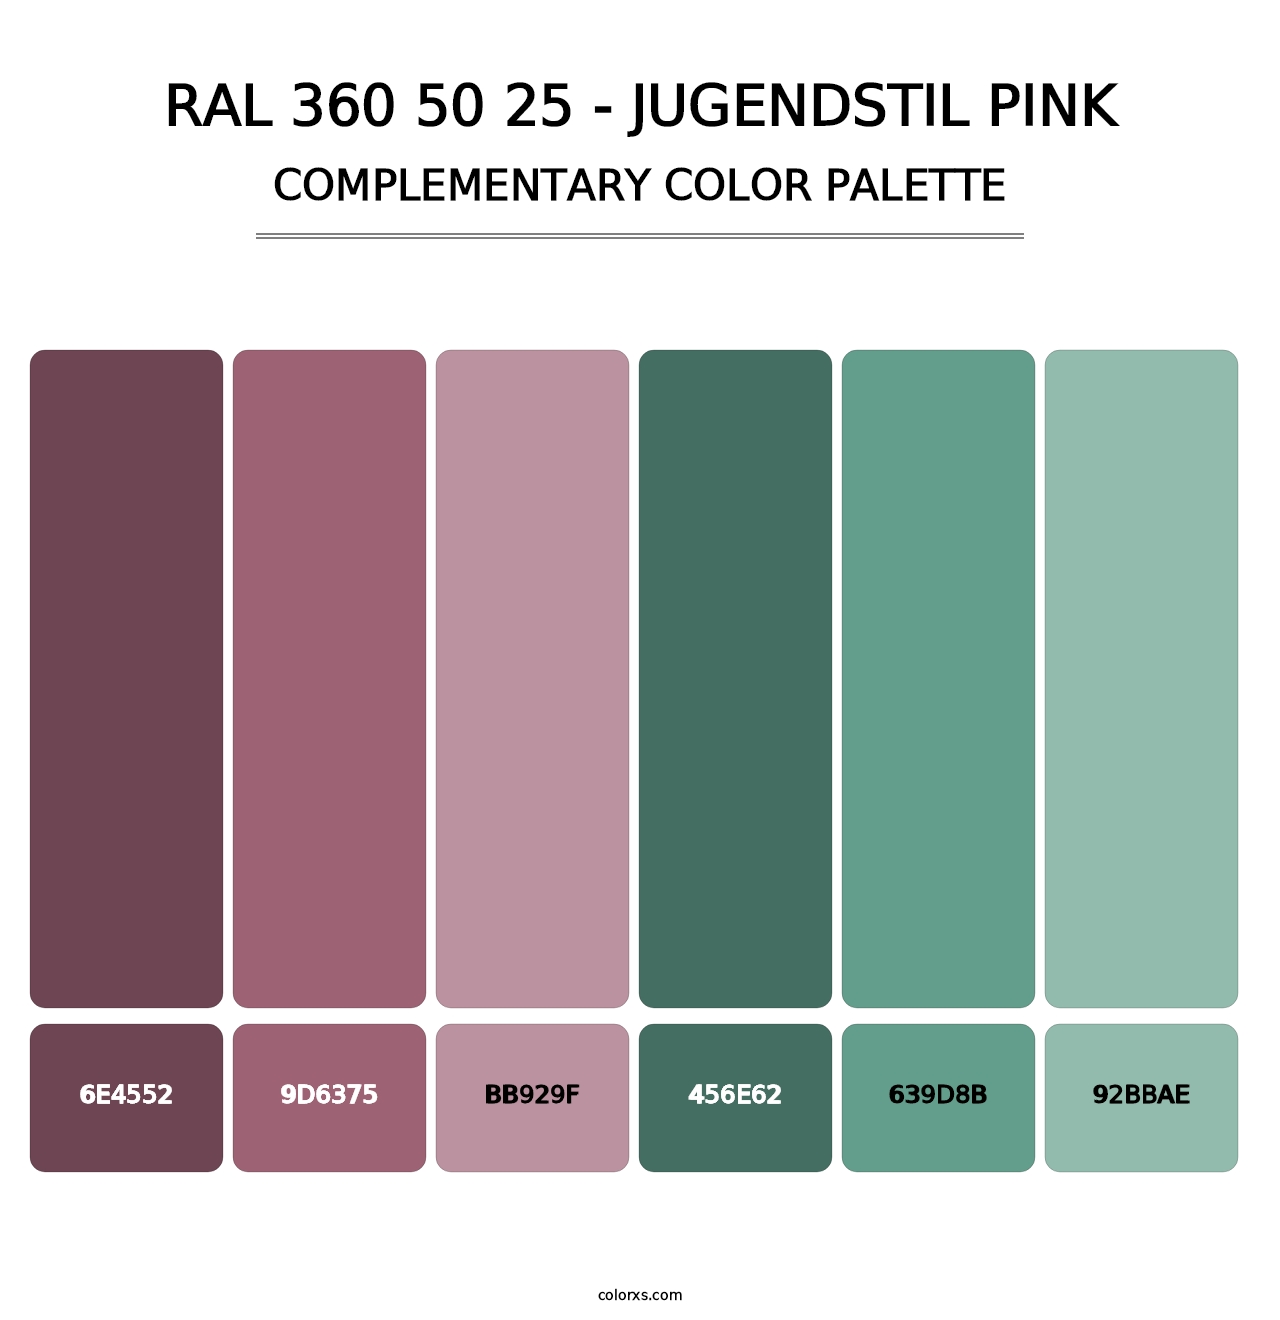 RAL 360 50 25 - Jugendstil Pink - Complementary Color Palette